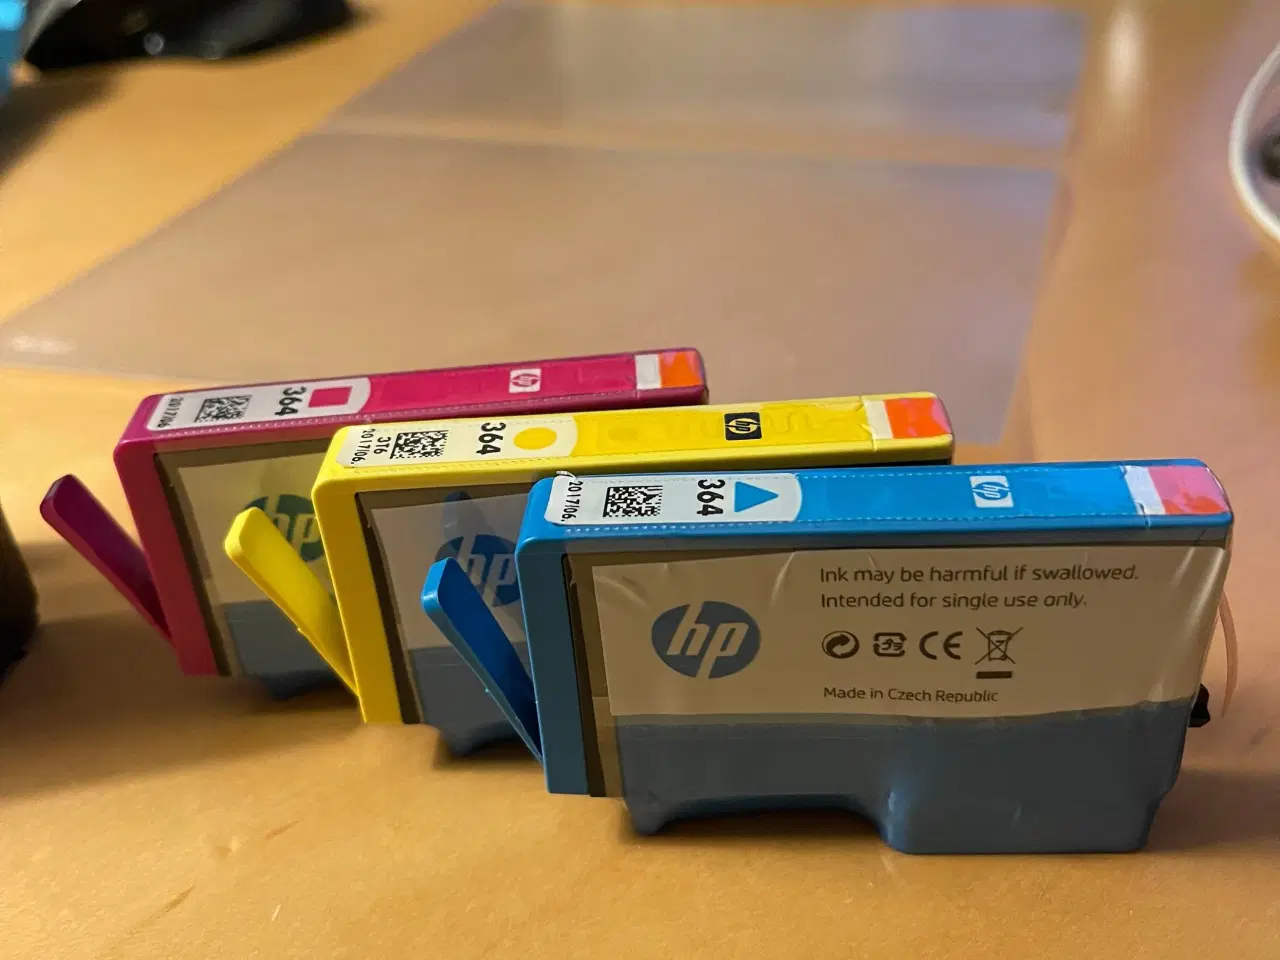 Billede 1 - Uåbnede HP printer patroner sælges